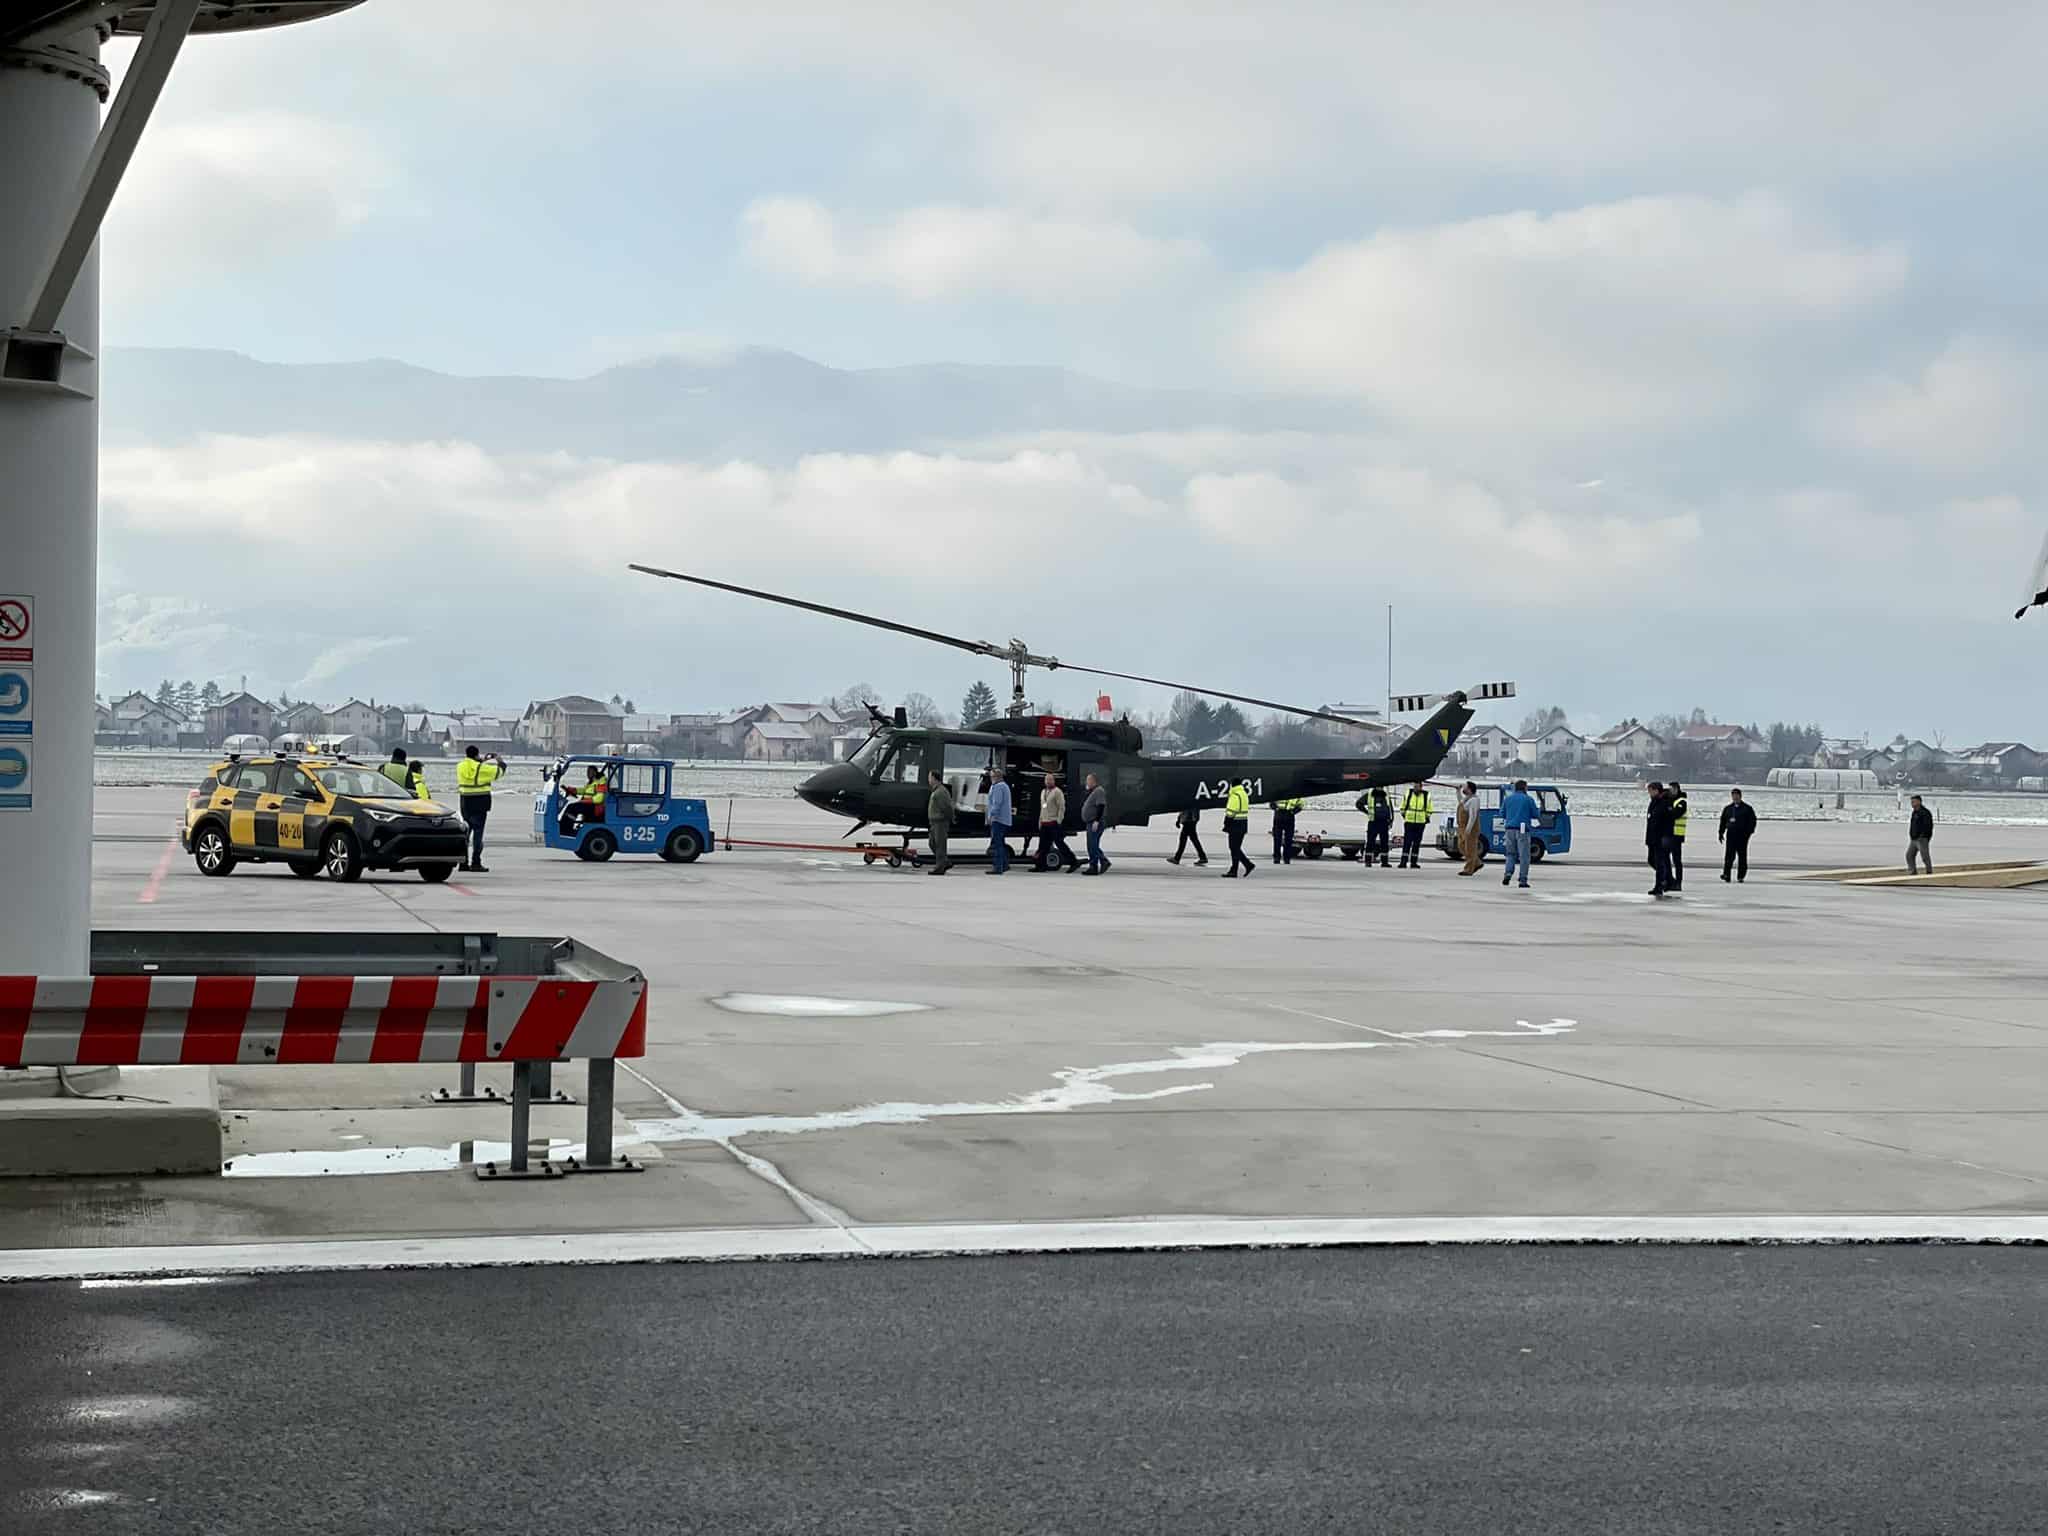 Гелікоптер UH-1 доставлений зі США до Боснії та Герцоговини у аеропорту Сараєво